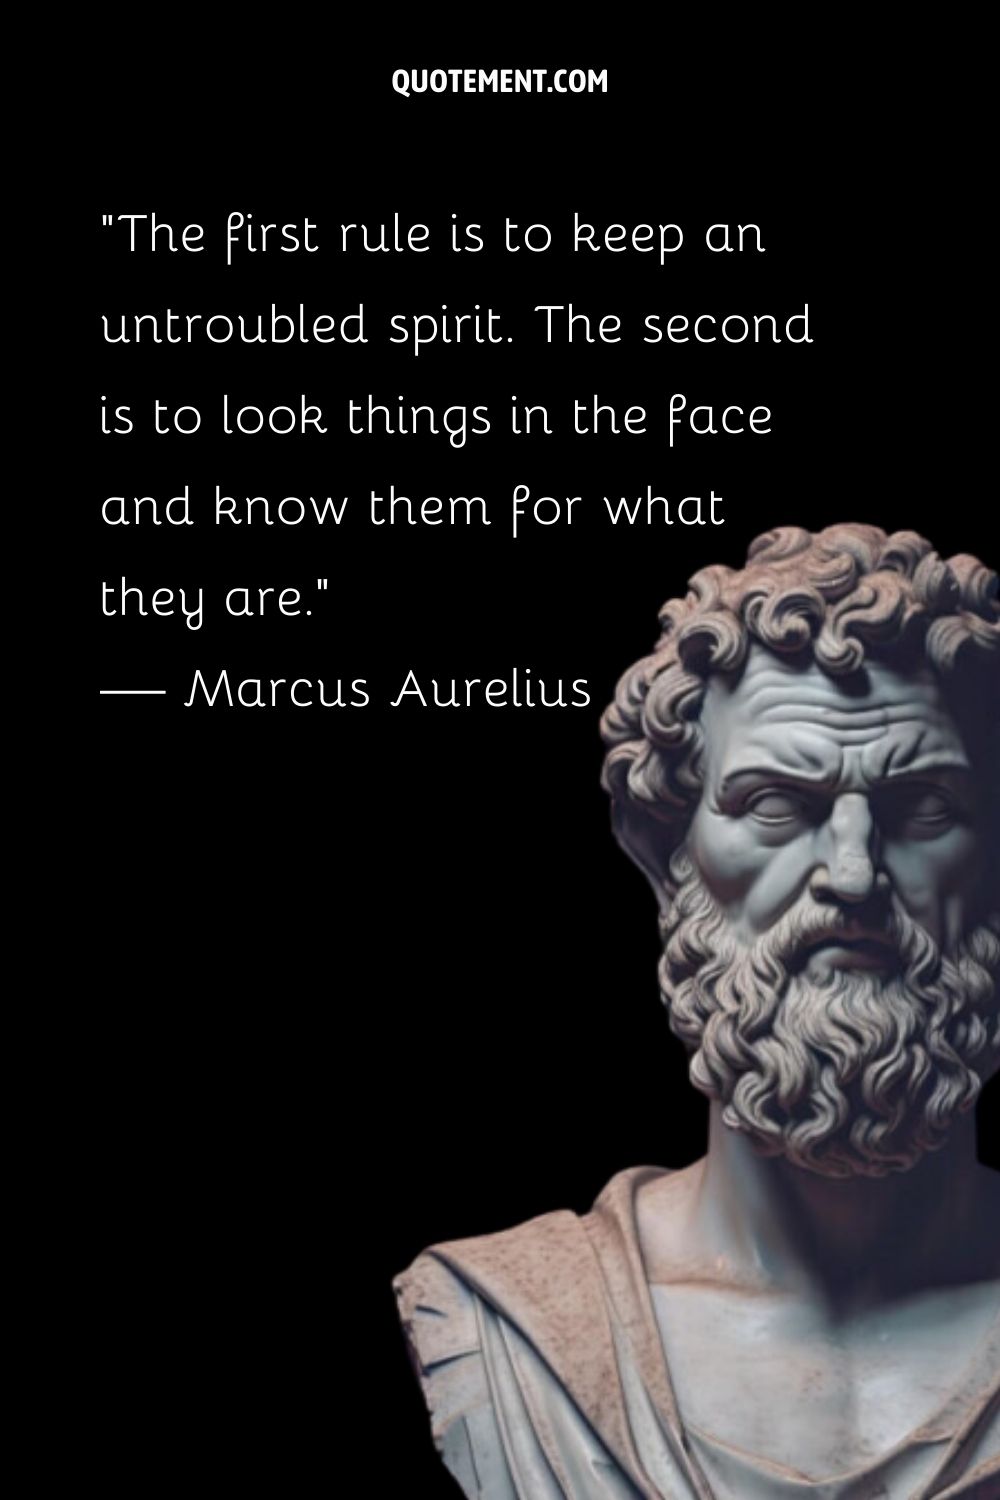 El filósofo tallado Marco Aurelio encarna la fuerza silenciosa